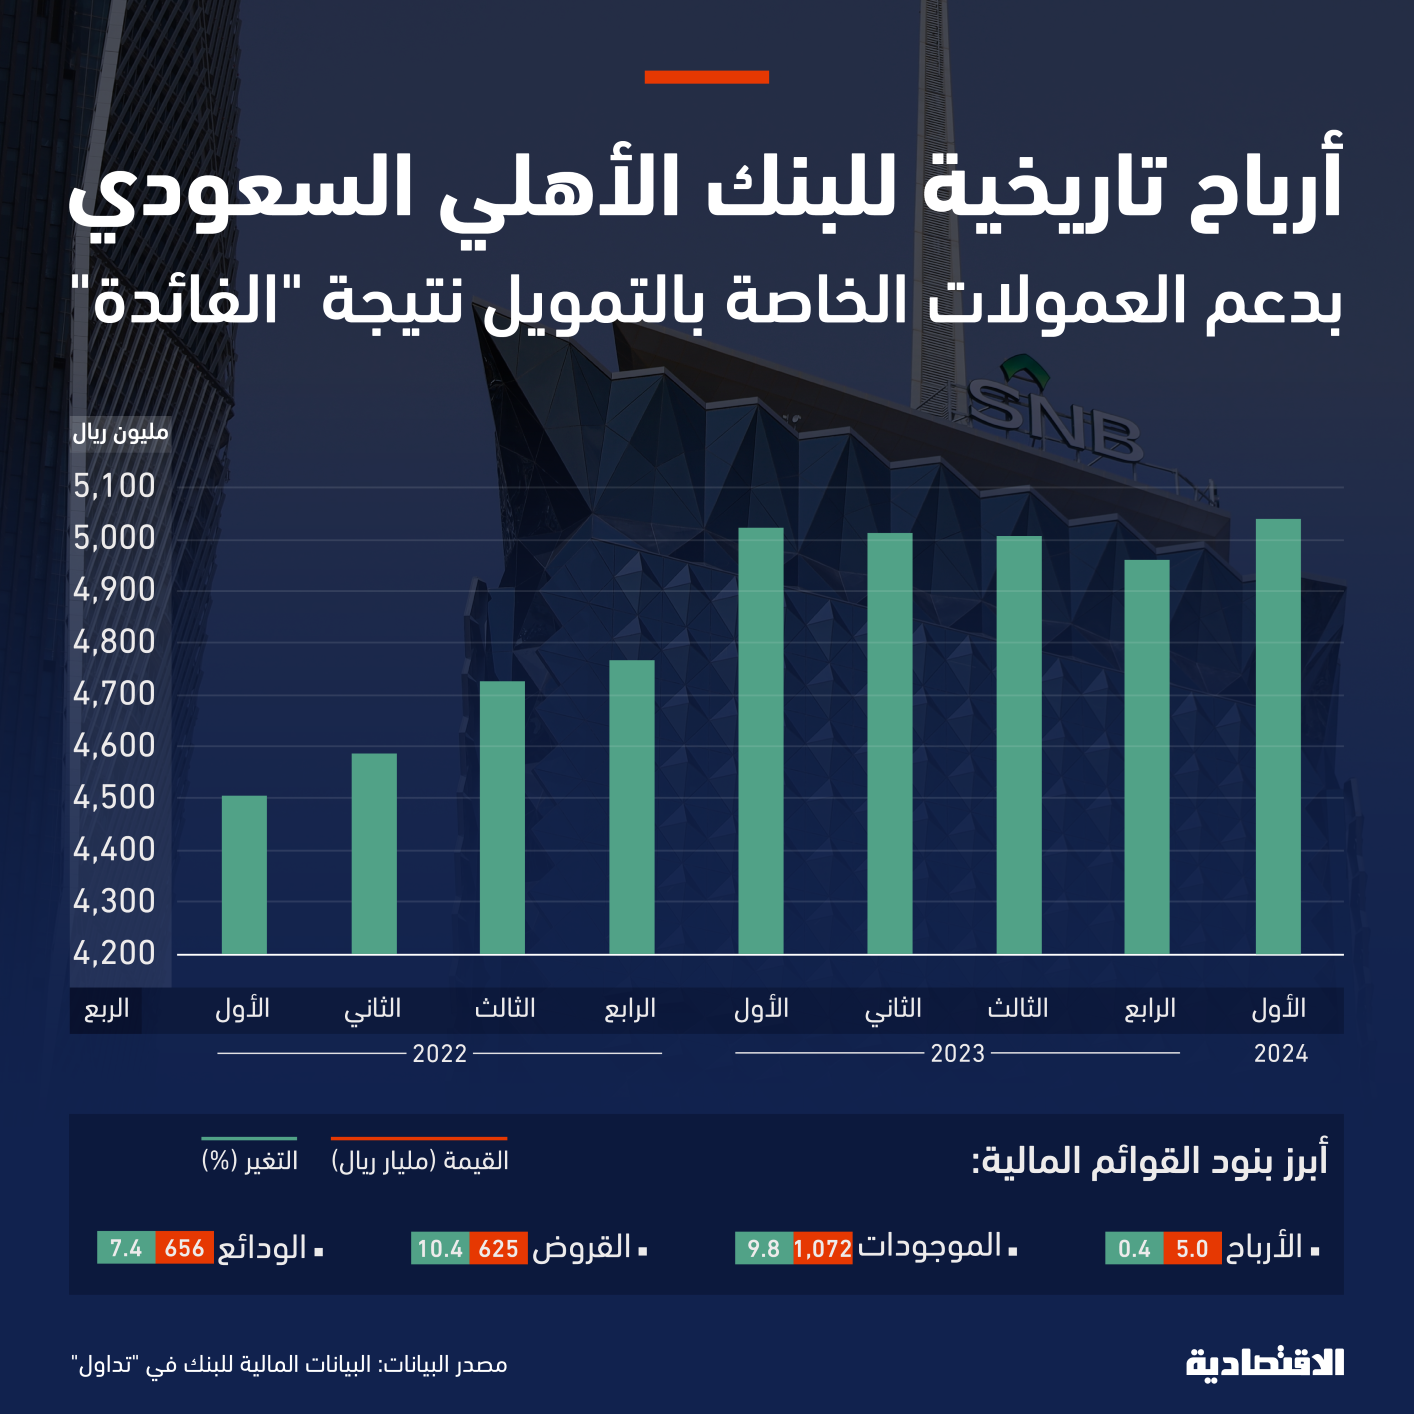 الفائدة تدفع البنك الأهلي السعودي لأعلى أرباح فصلية مع صعود العمولات الخاصة للتمويل 17 %